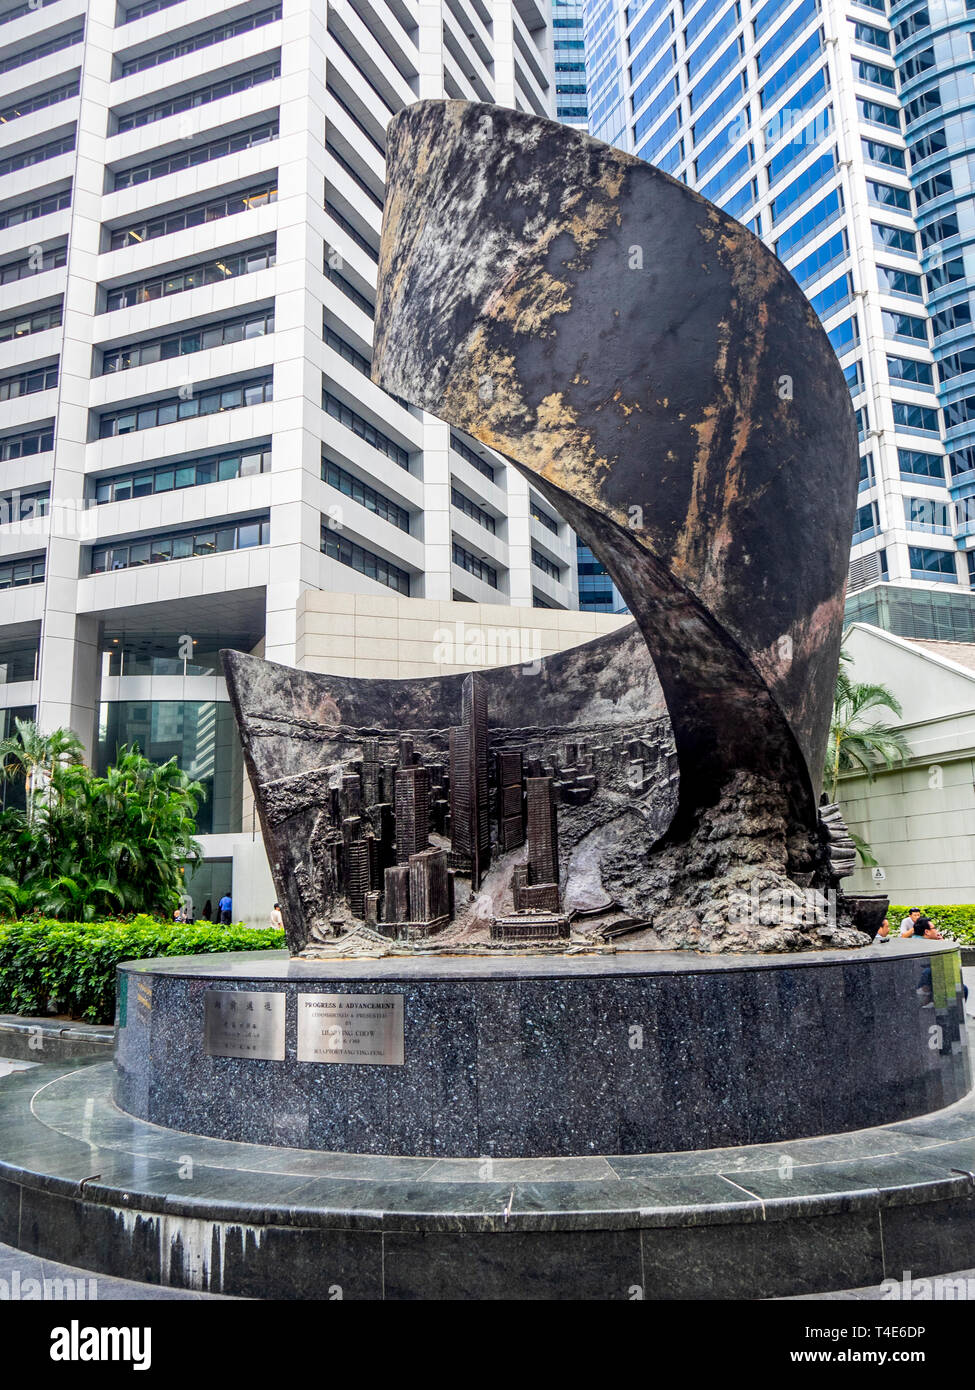 "Il progresso e avanzamento" scultura in bronzo di Yang-Ying Feng arte pubblica visualizzato nel centro cittadino di Singapore. Foto Stock